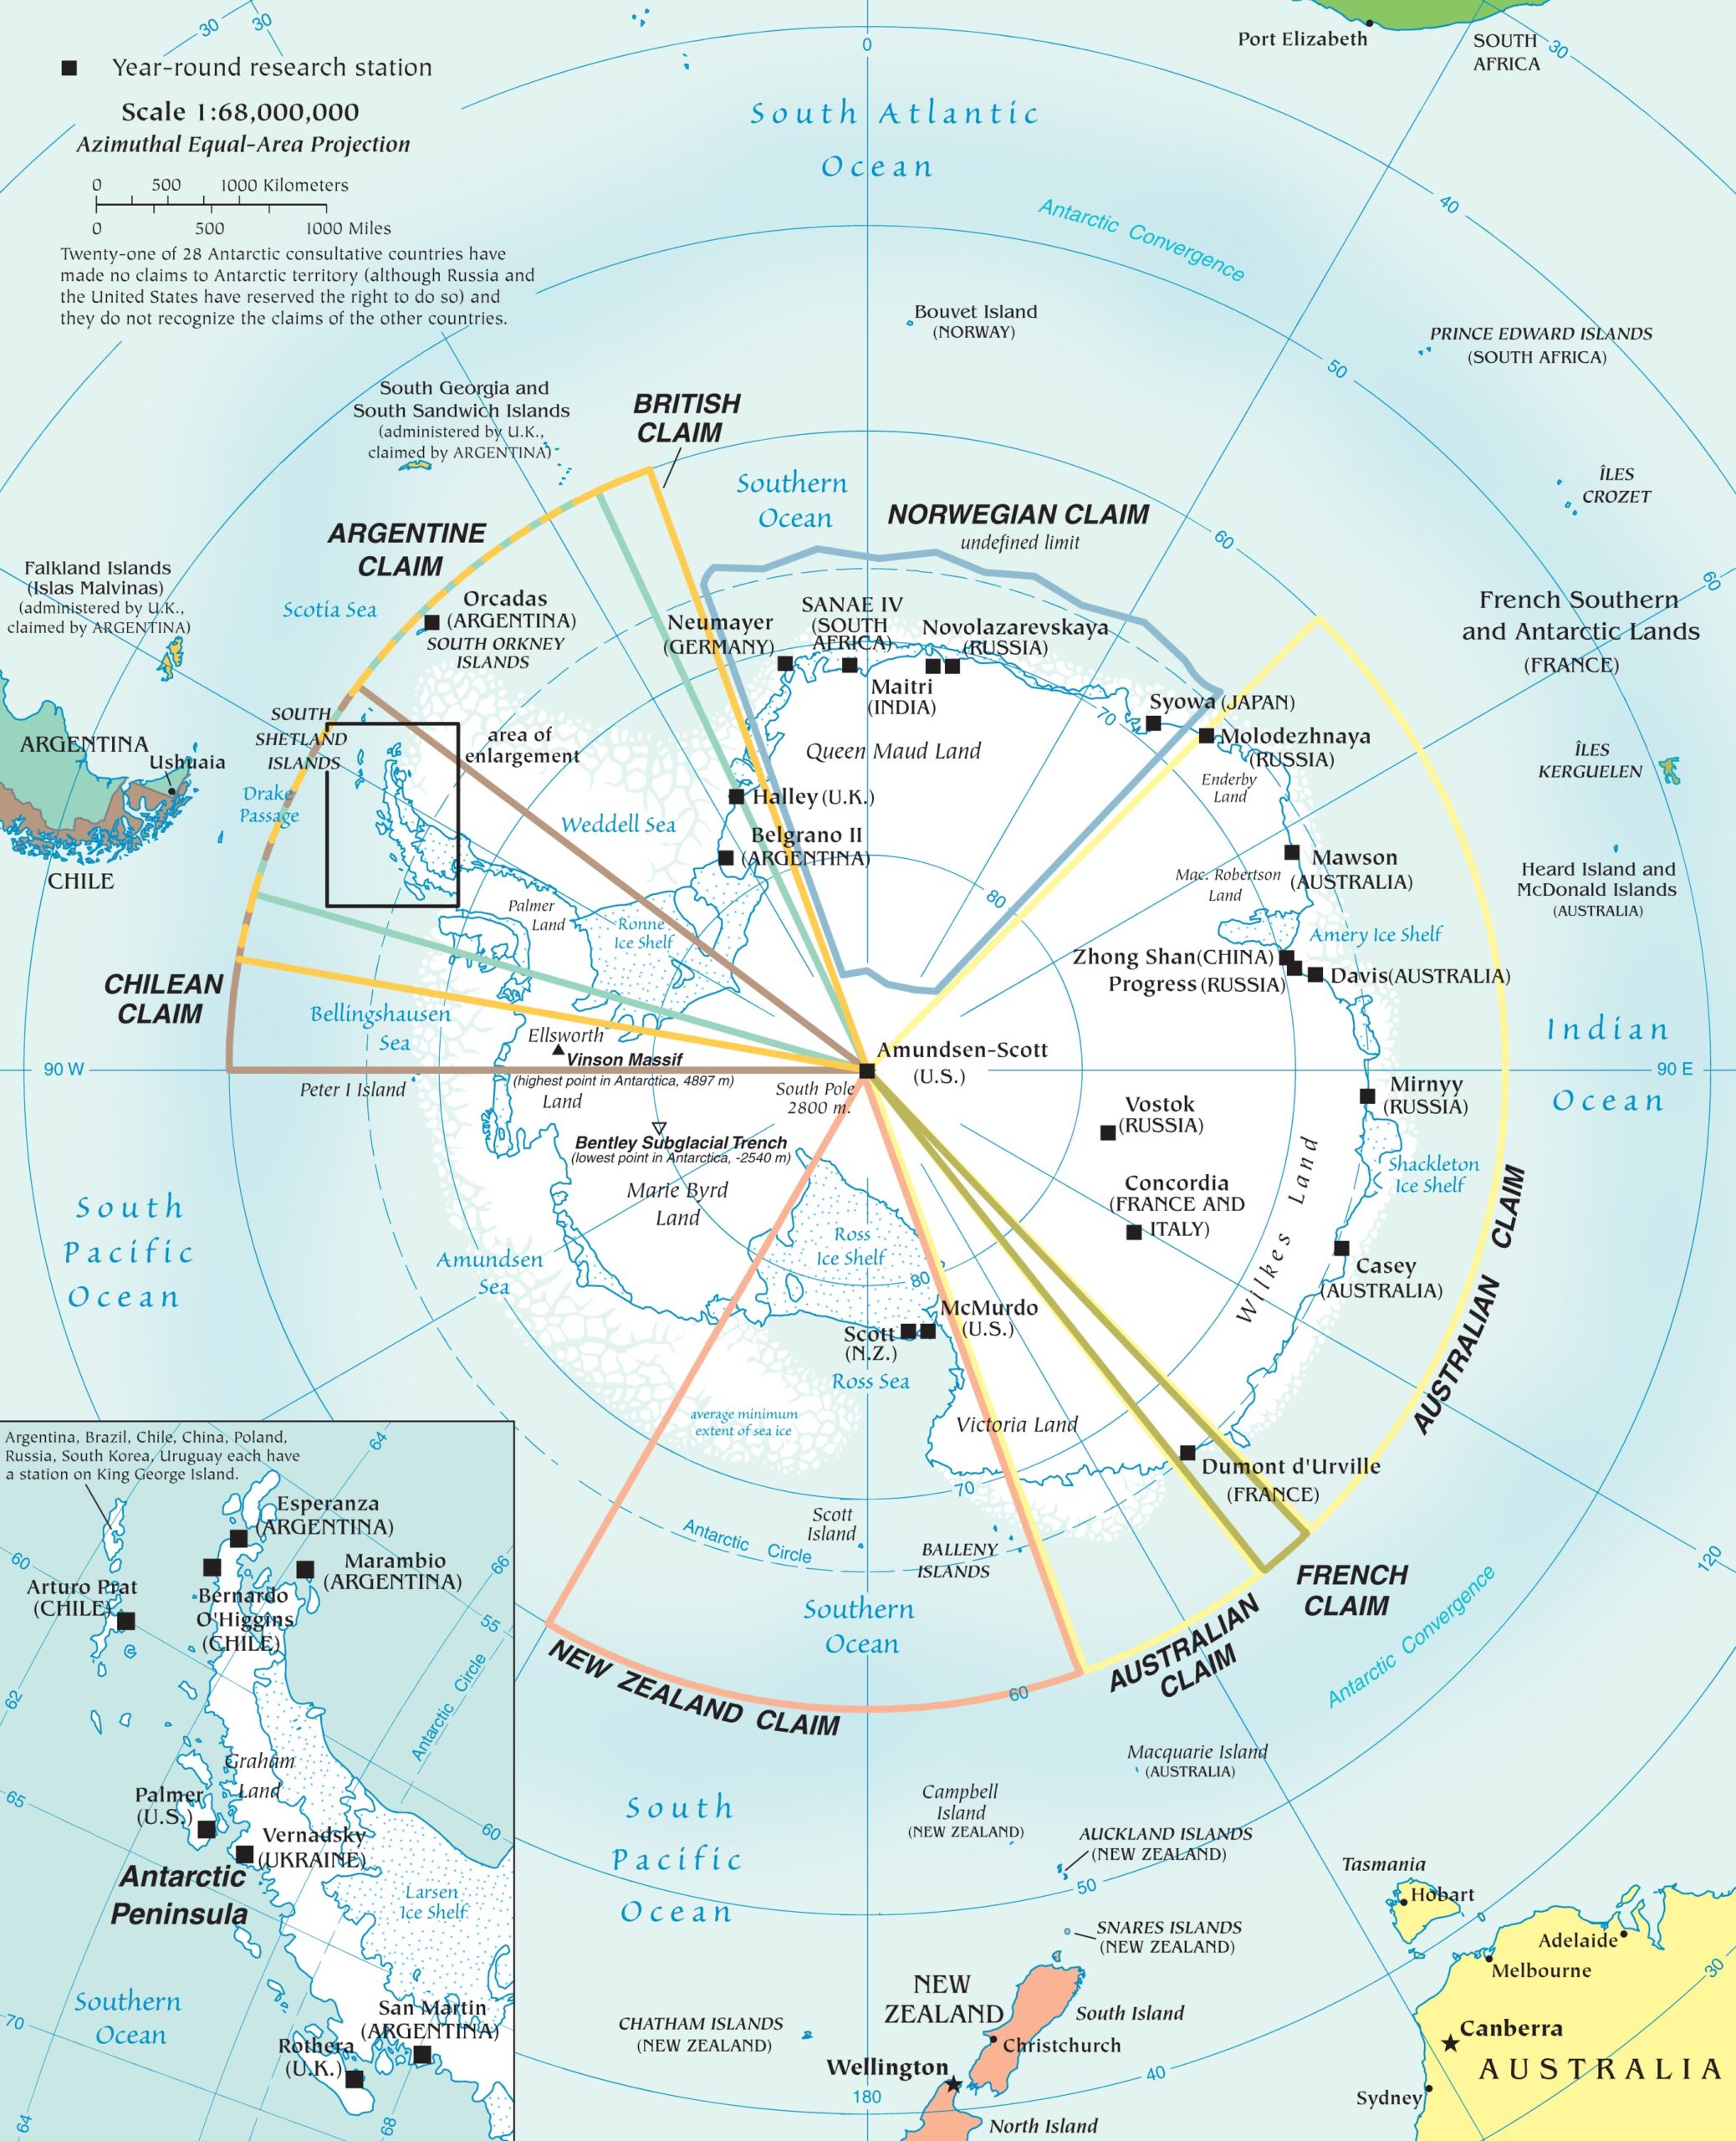 Las reclamaciones territoriales en la Antártida (2021)